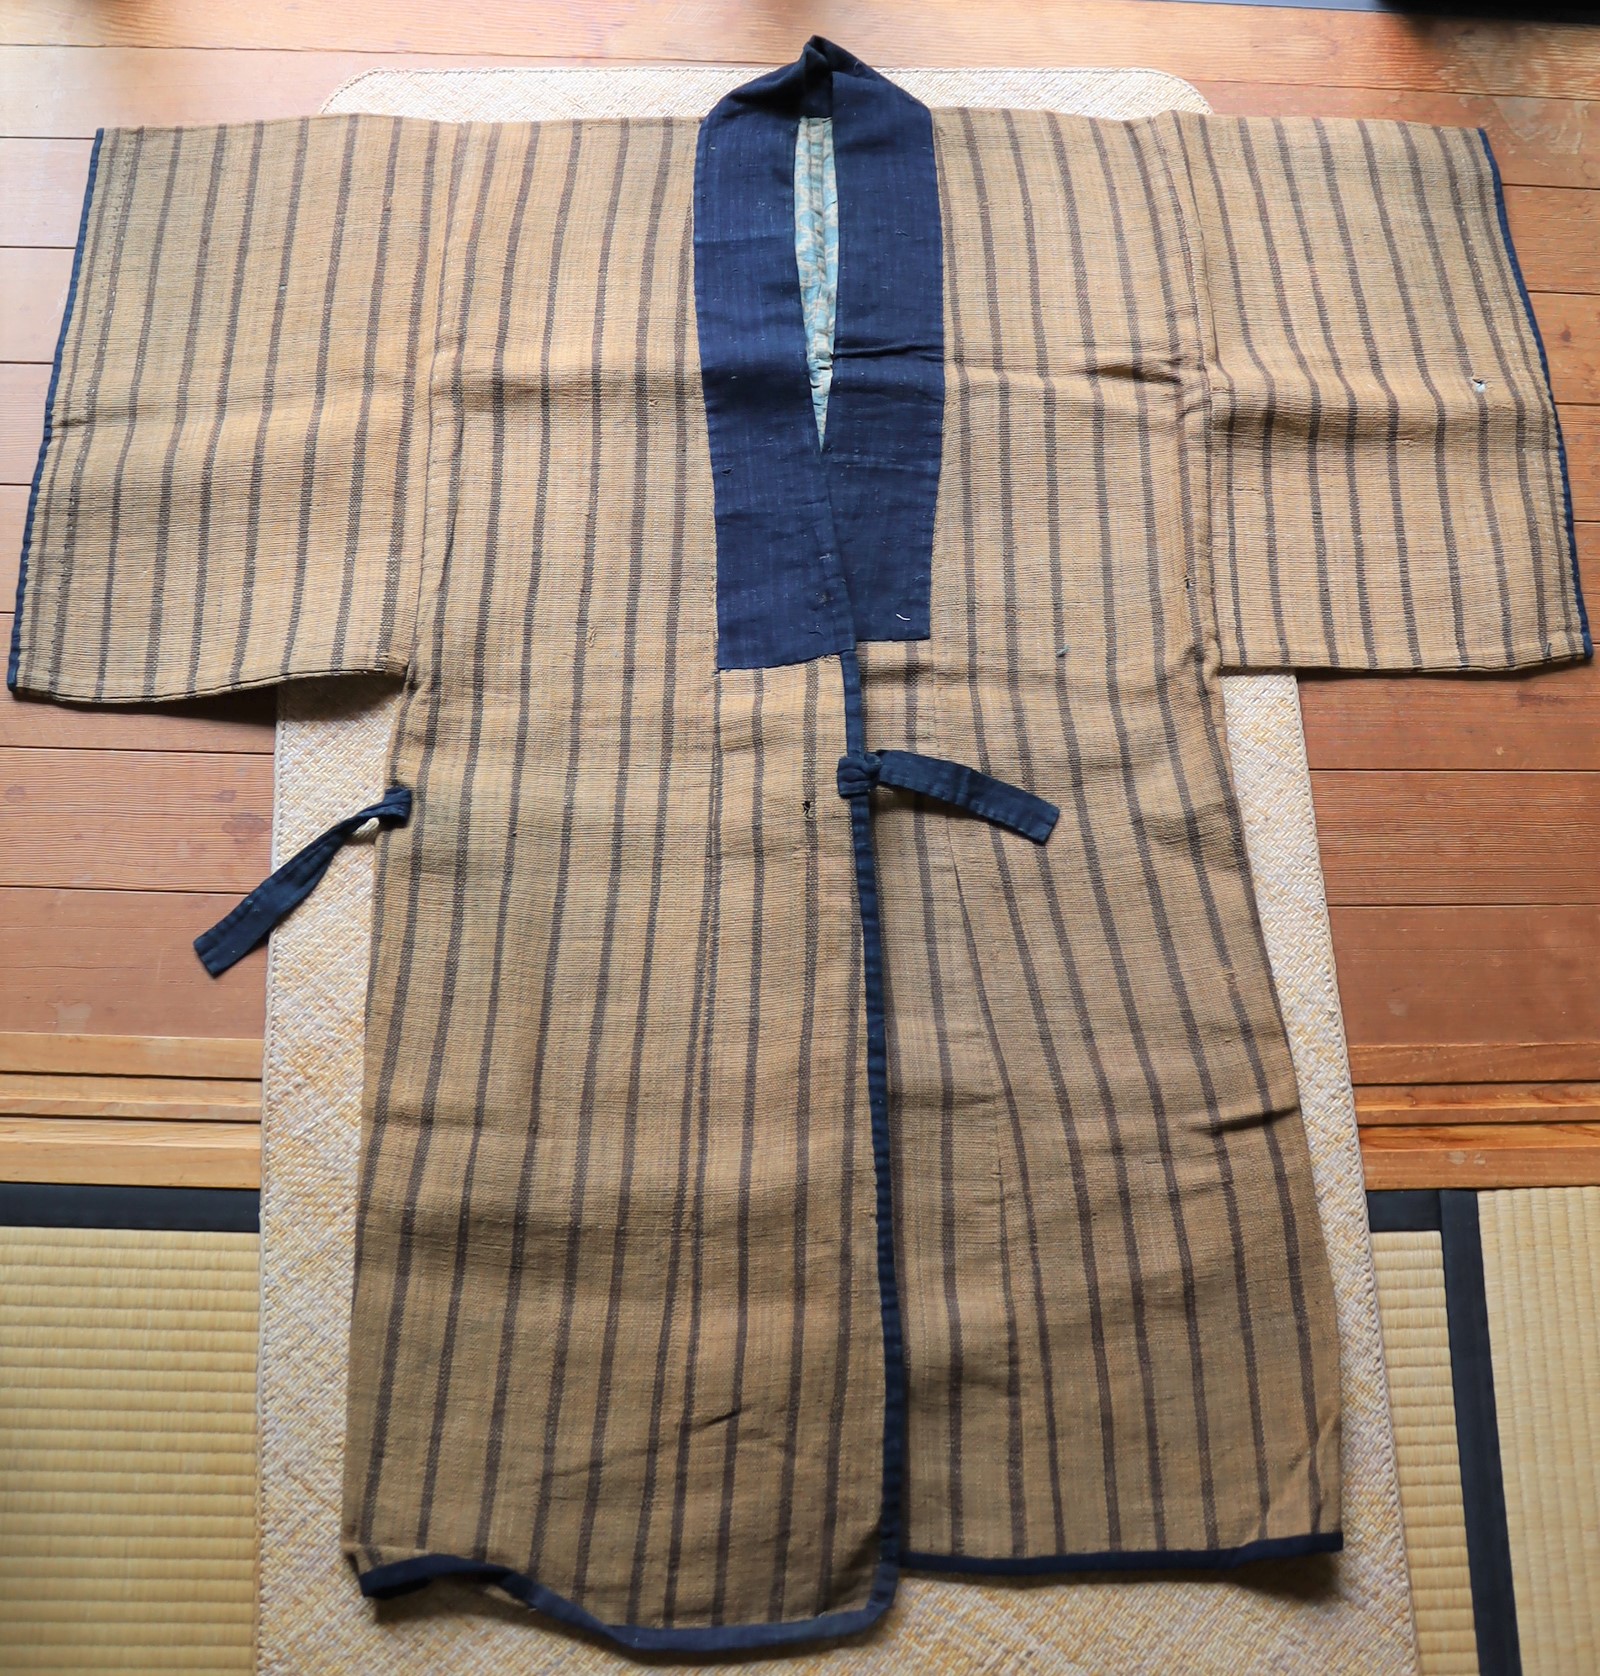 沖縄 芭蕉布の上っ張りお気に召したお方様とのご縁を - 着物・浴衣